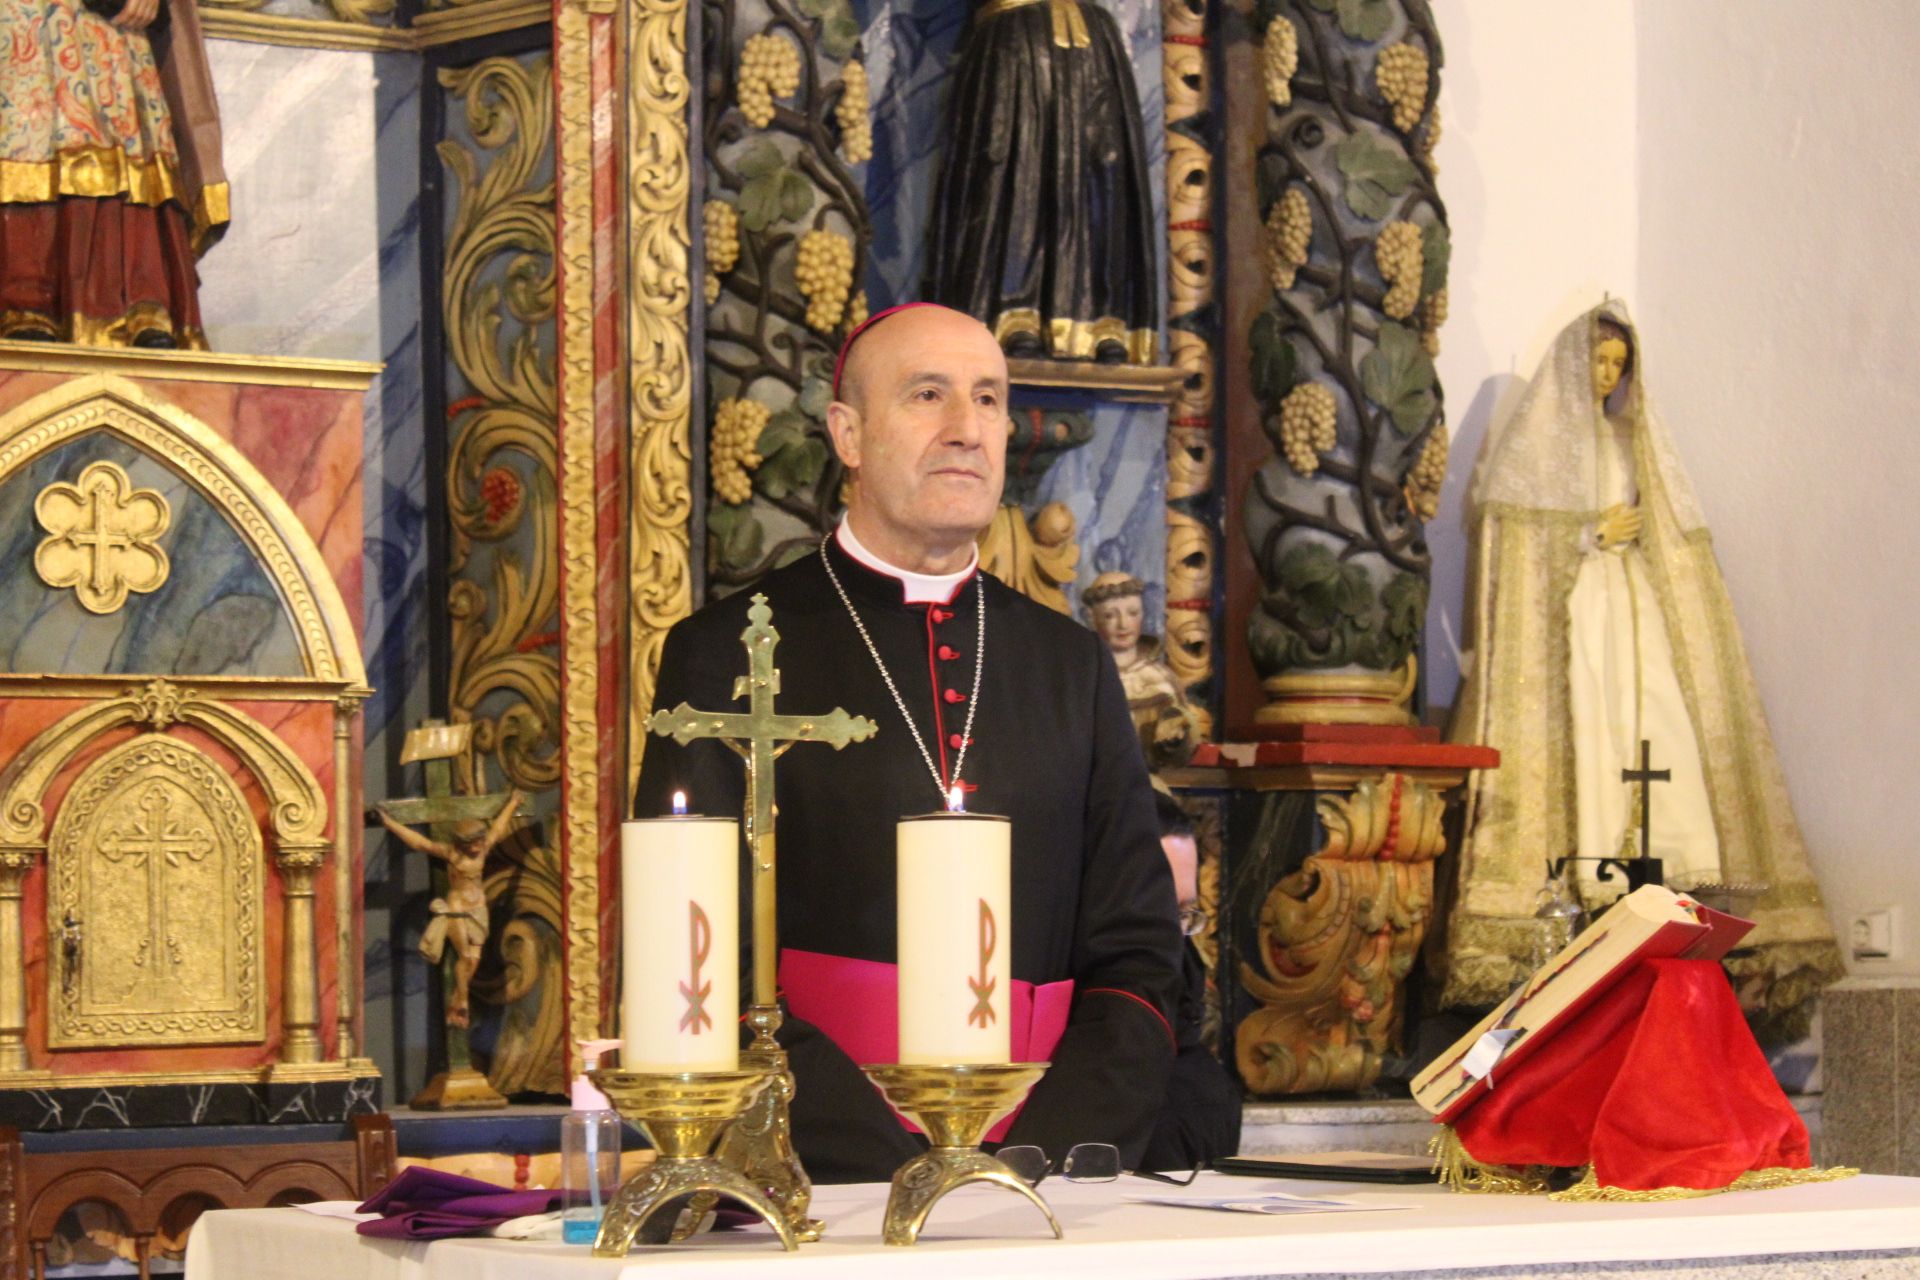 GALERÍA | El obispo visita Villanueva de la Sierra y As Hedradas